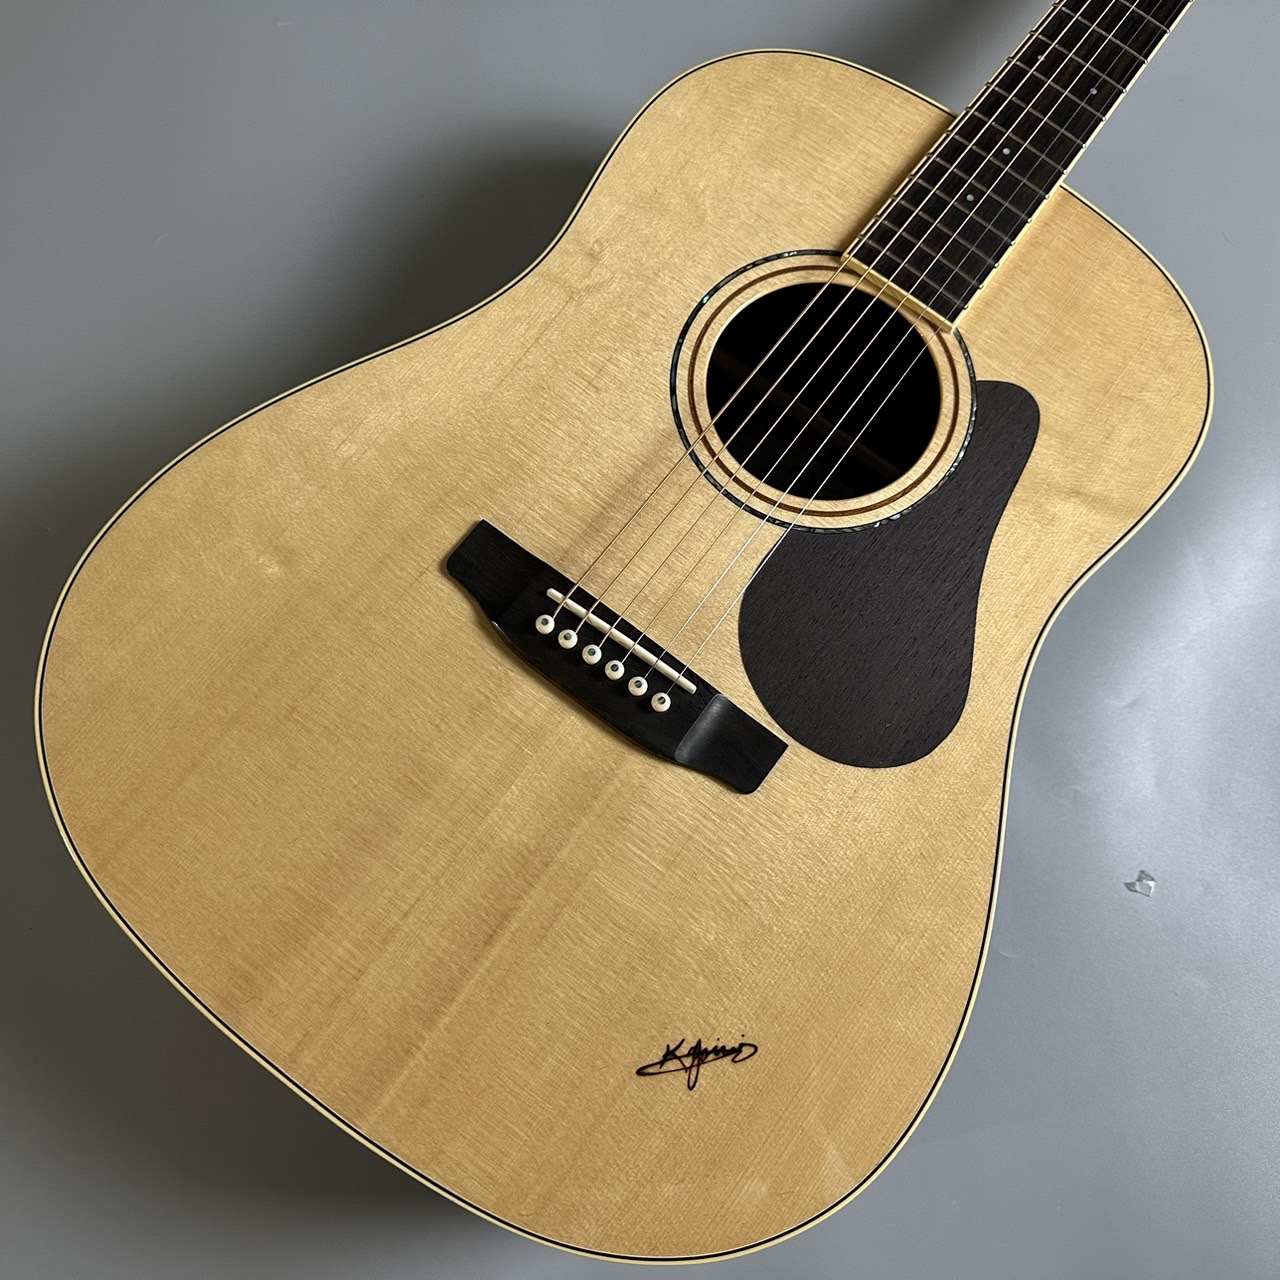 木の温もりを感じられる国産ヤイリギター×島村楽器のコラボレーションモデルK.Yairi SL-RO1